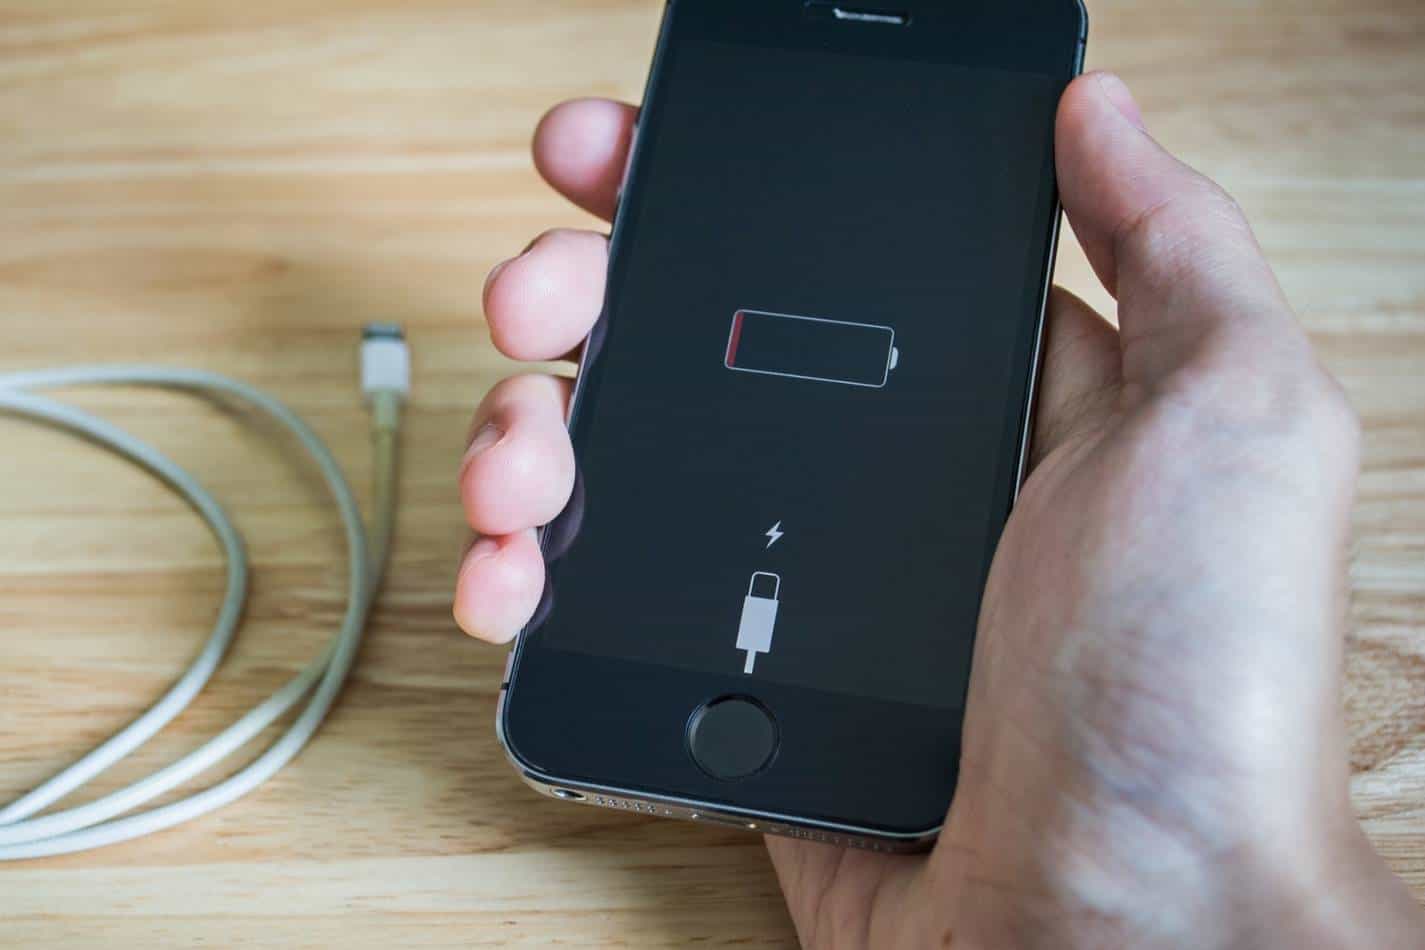 Dicas simples para economizar a bateria do iPhone